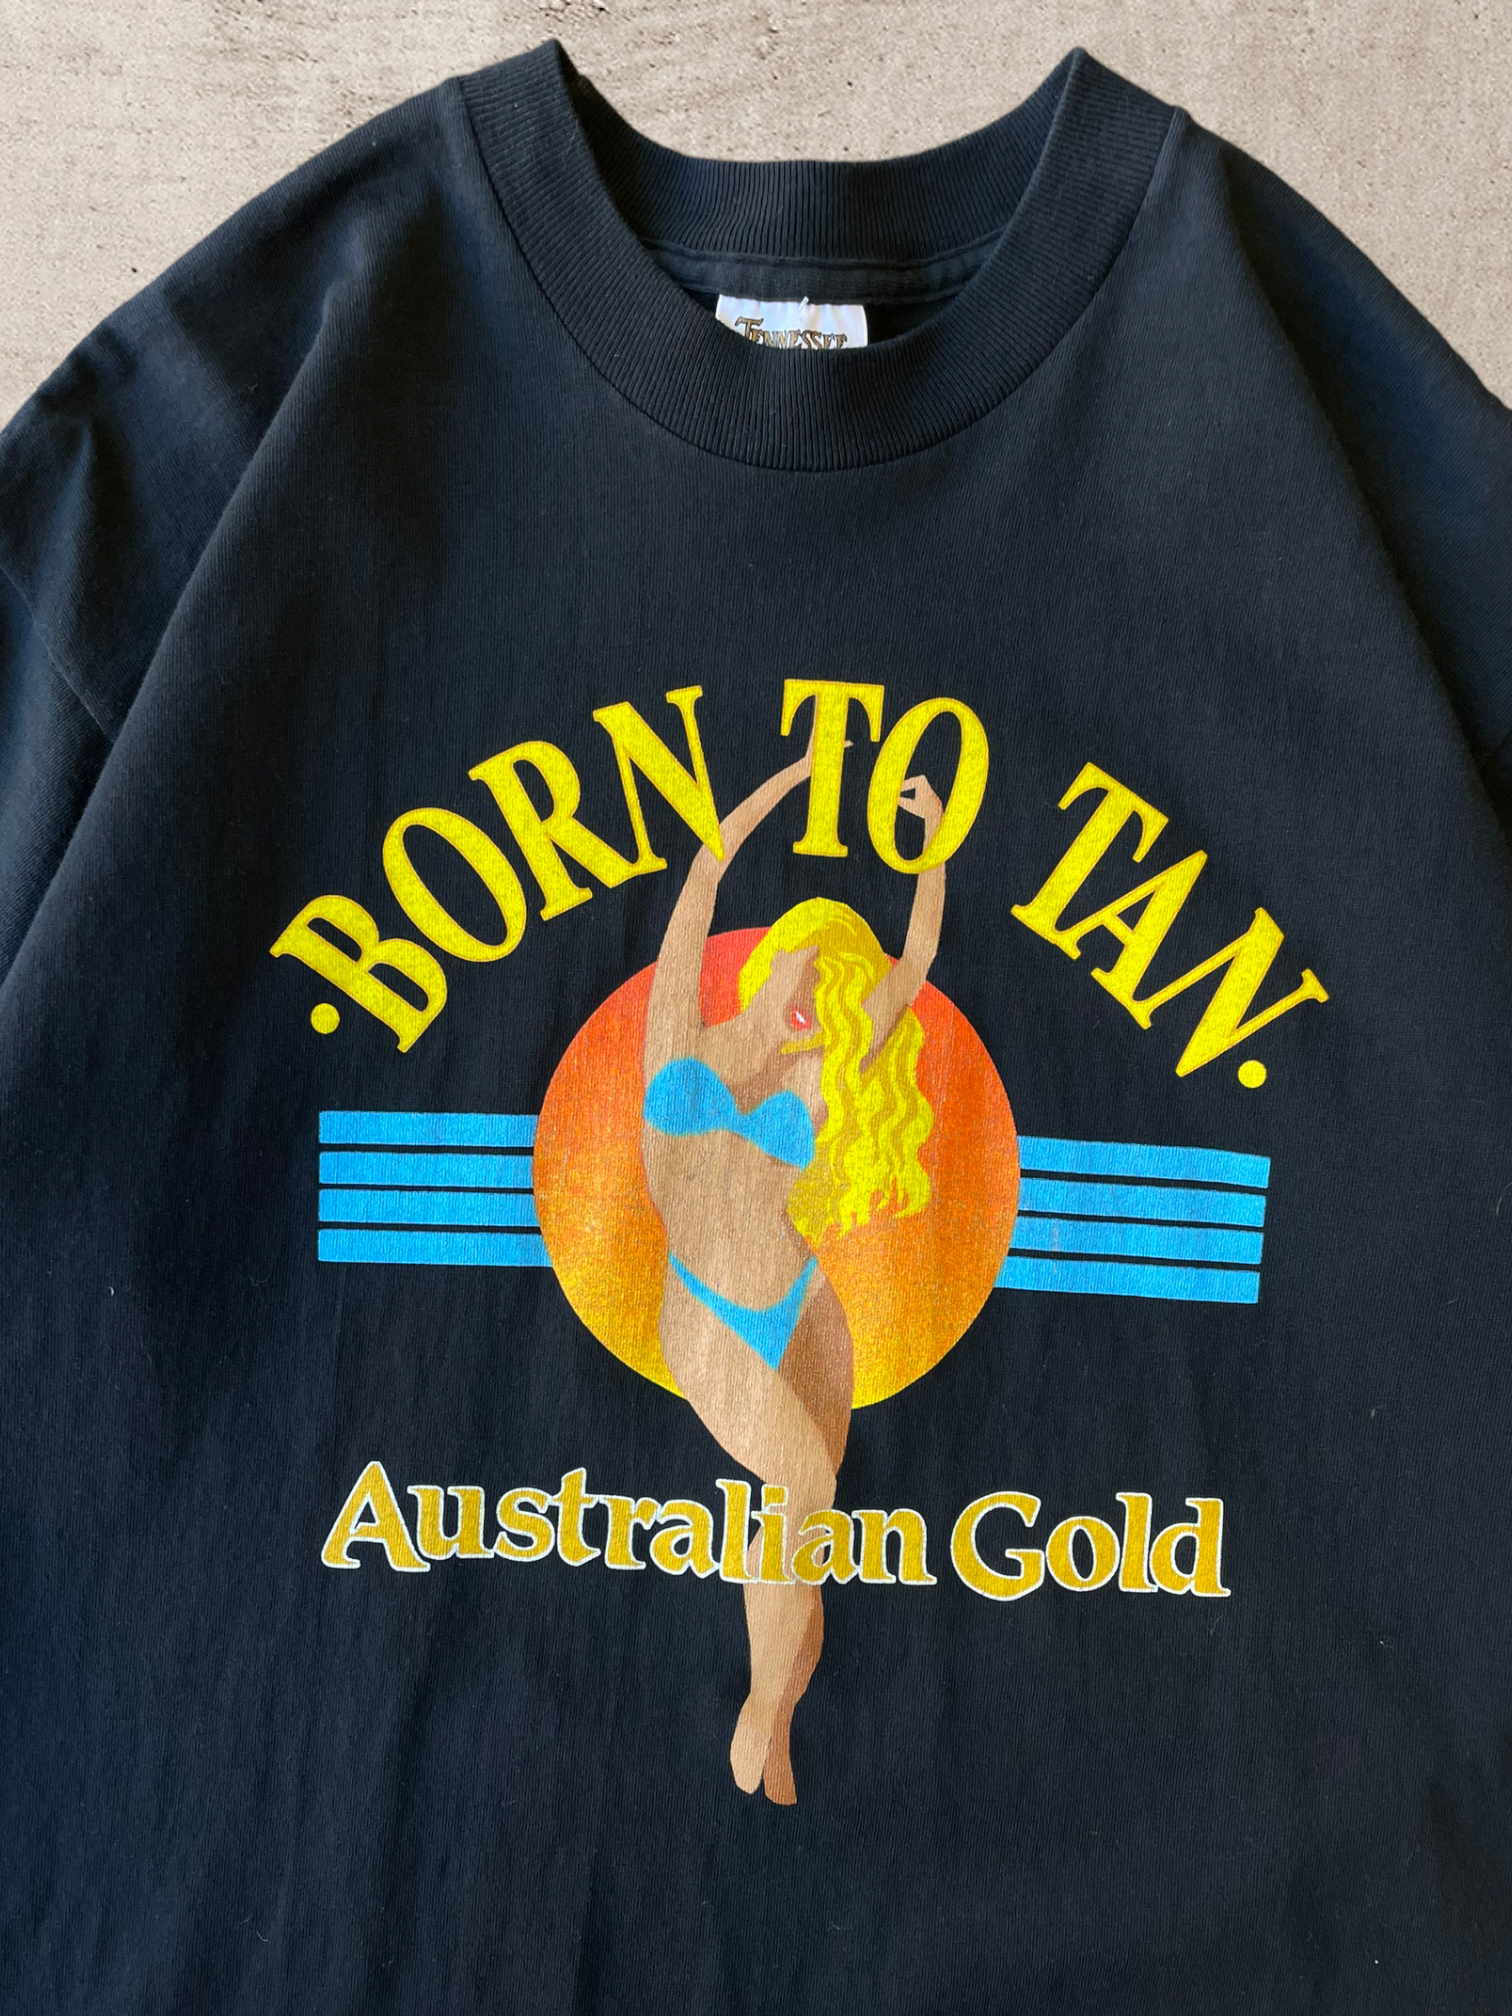 90 年代 オーストラリアン ゴールド Born to Tan T シャツ - L